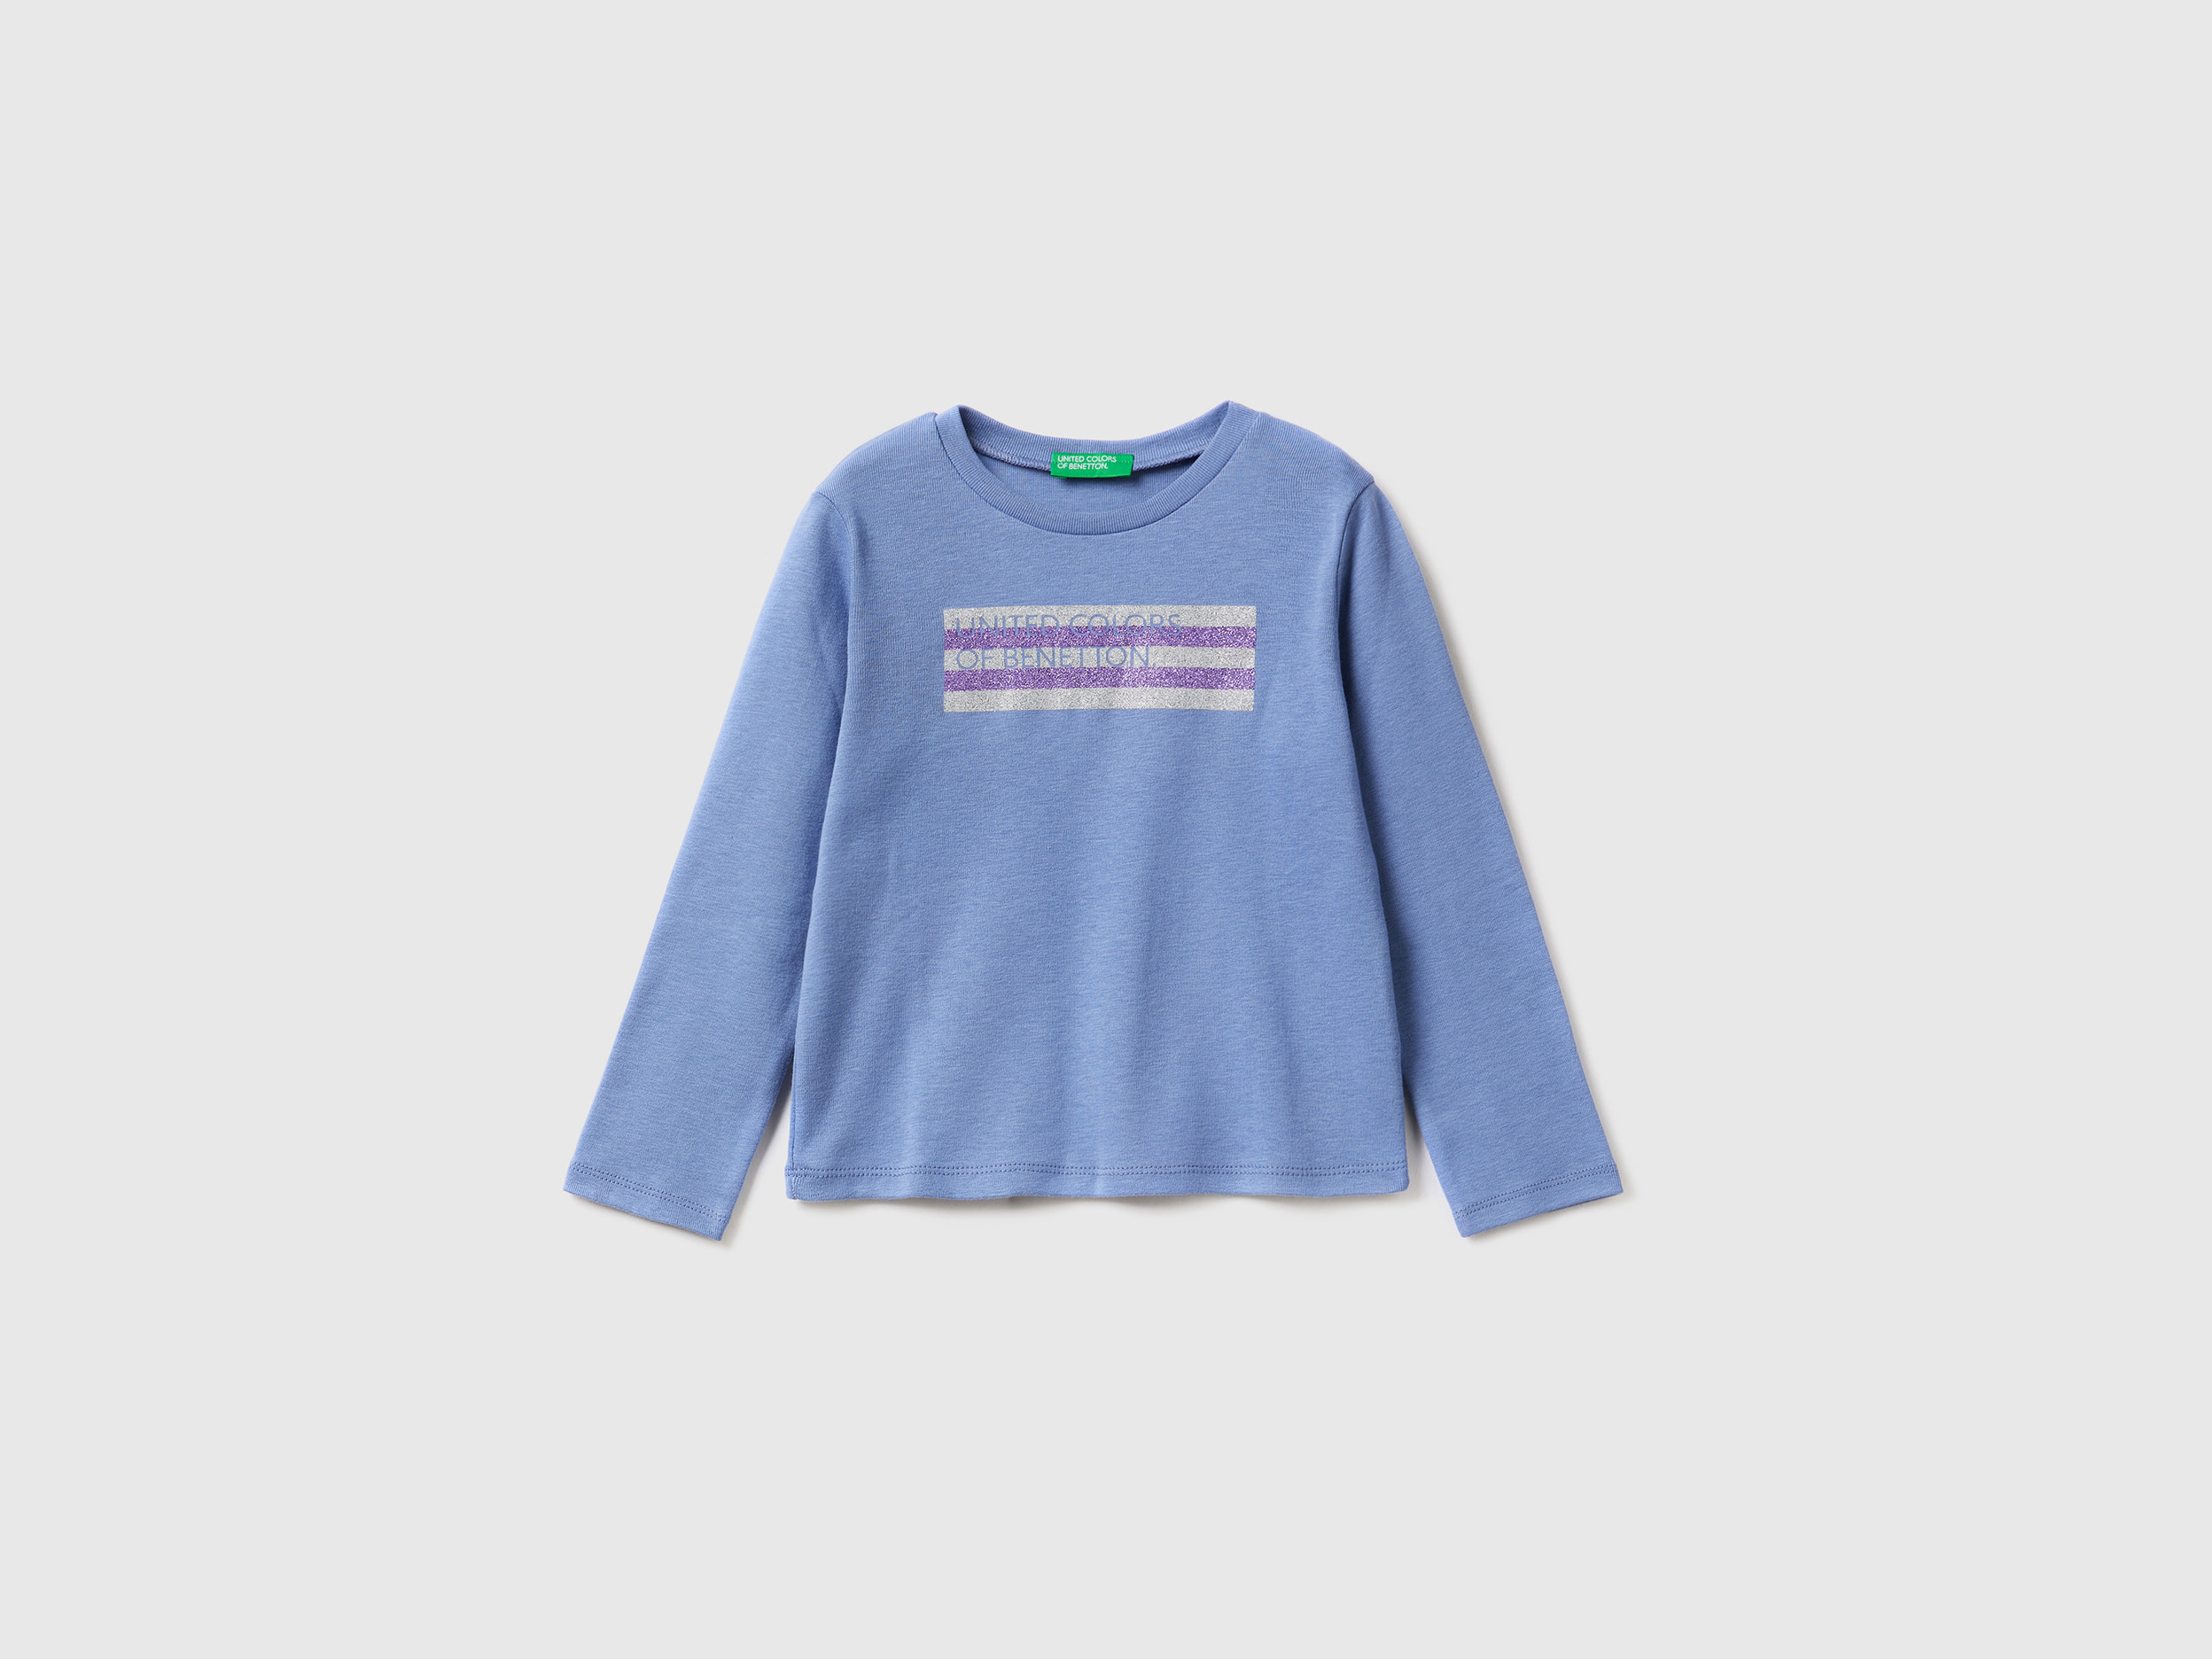 Benetton, Long Sleeve T-shirt With Glitter Print, size 5-6, Light Blue, Kids